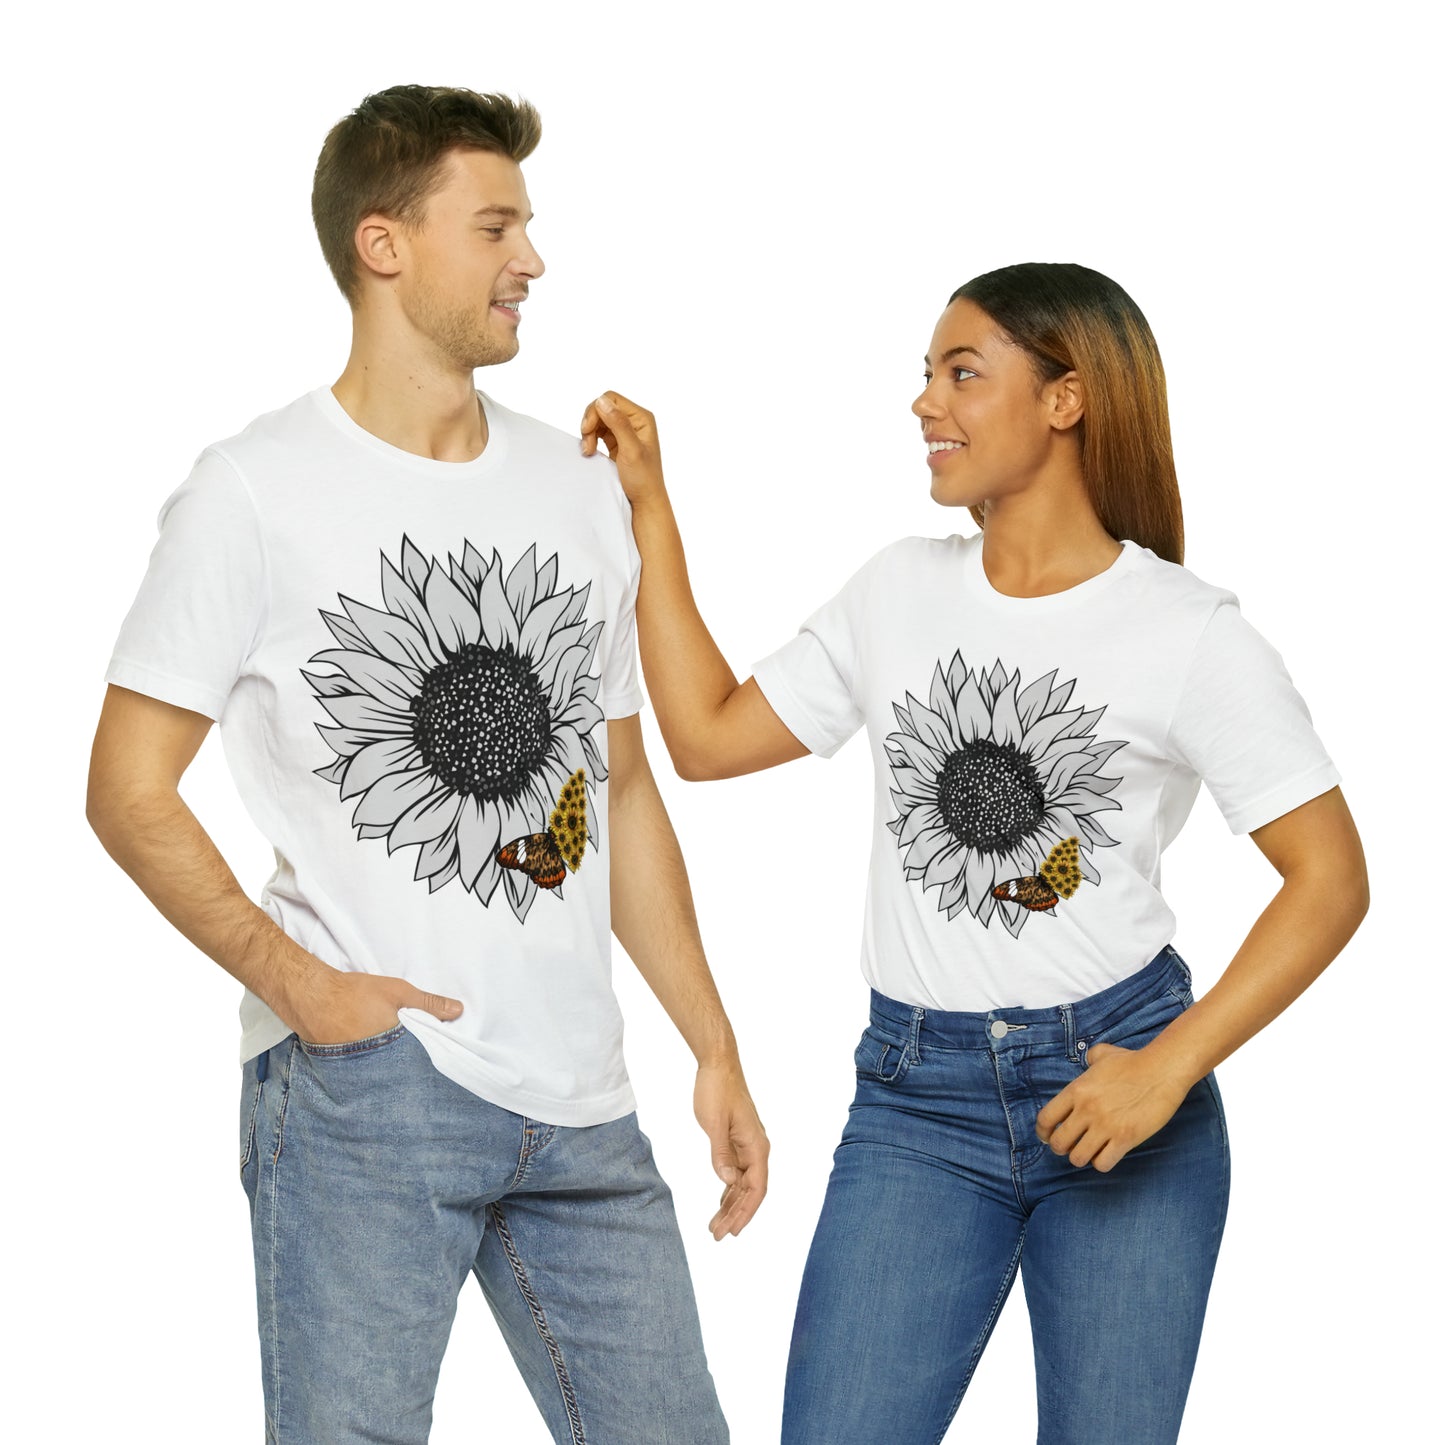 Flower Shirt, Sunflower Shirt, Floral Tee Shirt, Garden Shirt, Womens Fall Summer Shirt Sunshine Tee, Gift for Gardener, Nature love shirt